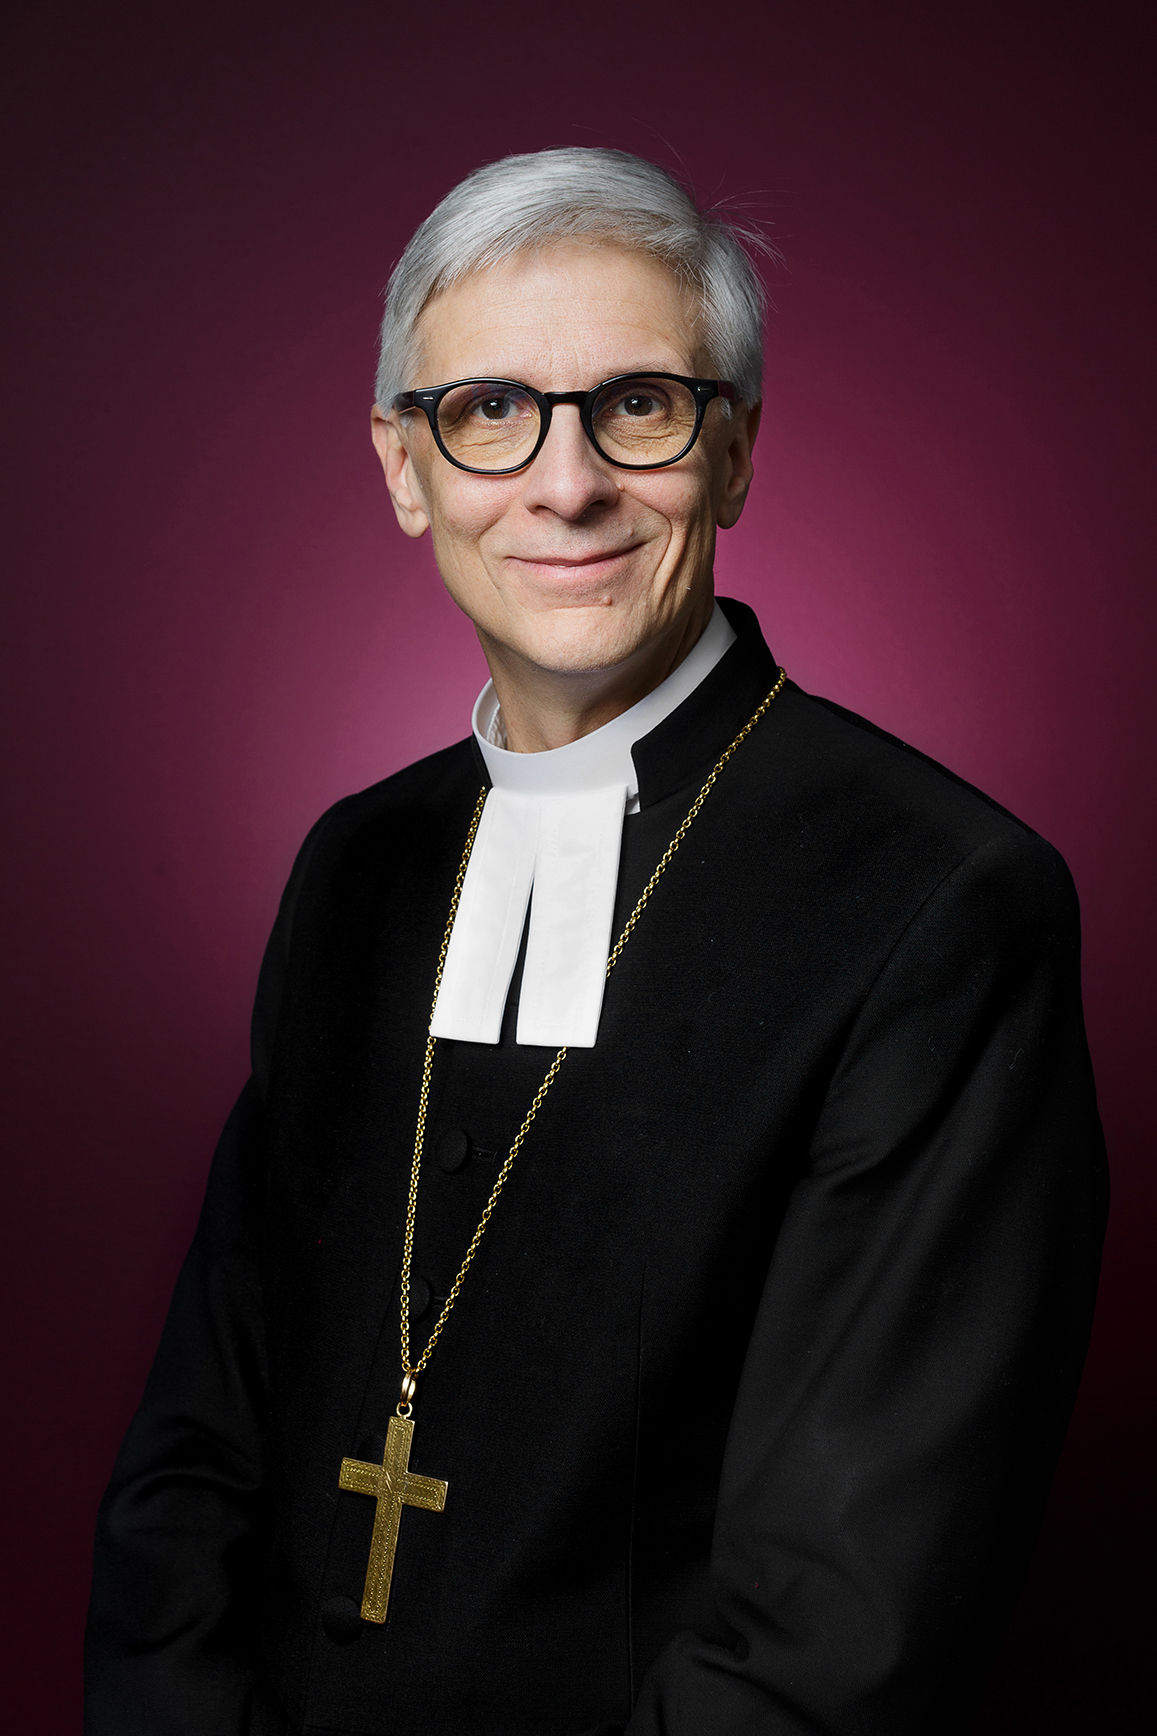 Piispan tehtävät | Piispa Matti Repo